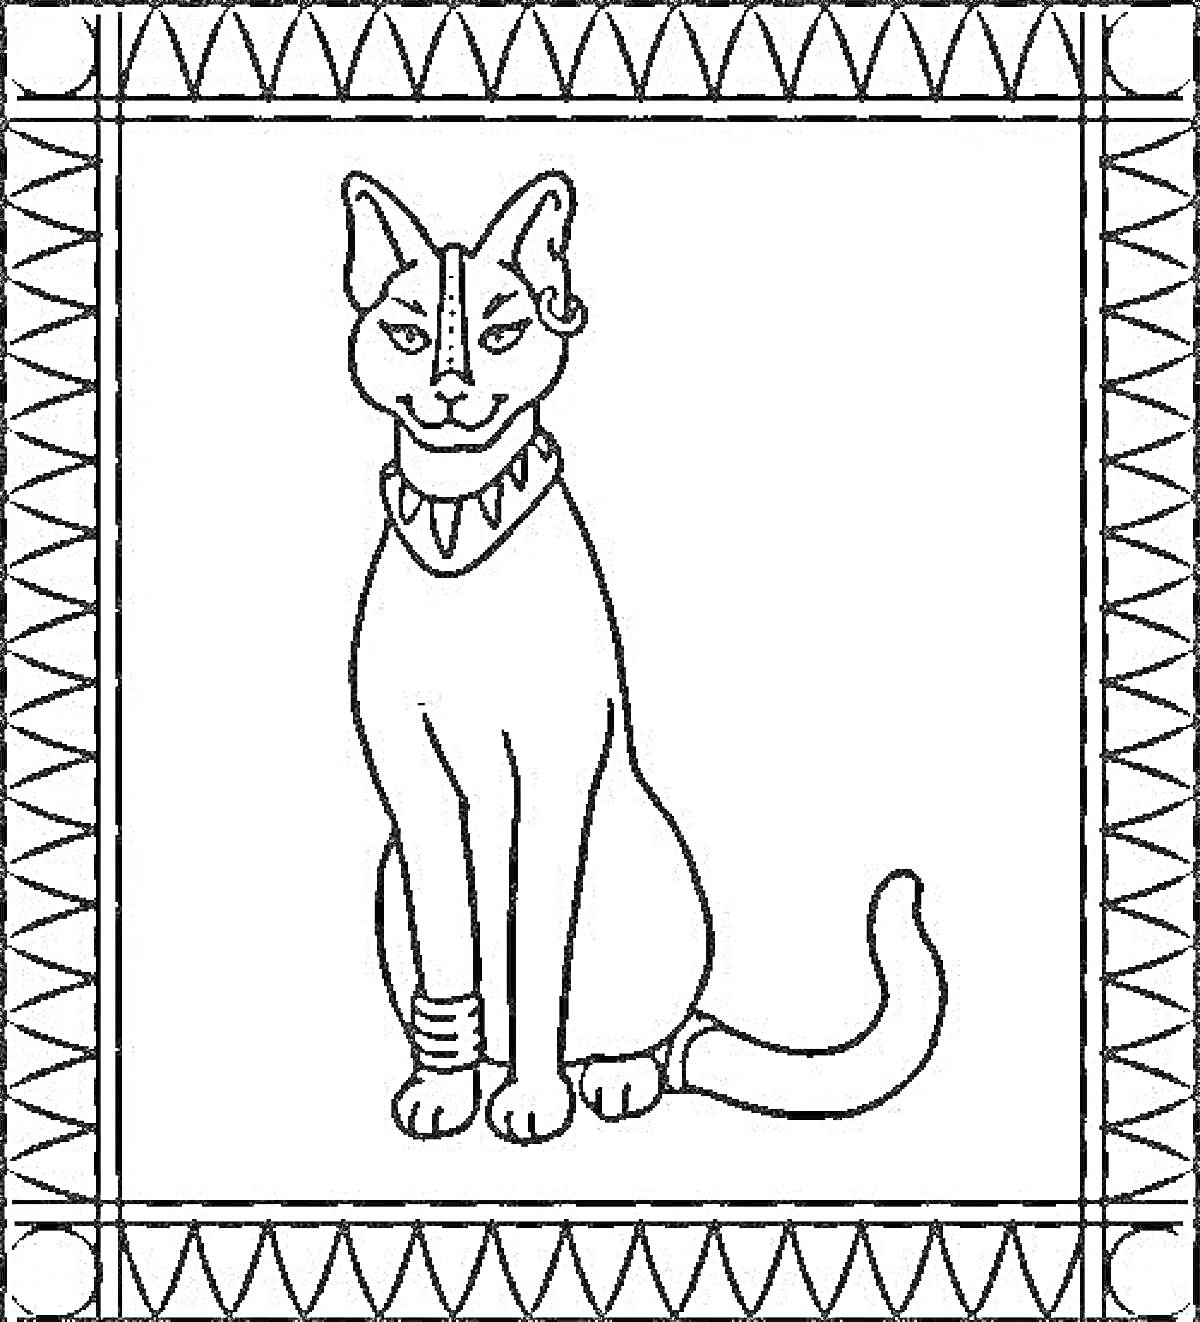 Раскраска Египетская кошка с украшениями на шее и лапе в рамке с геометрическим узором